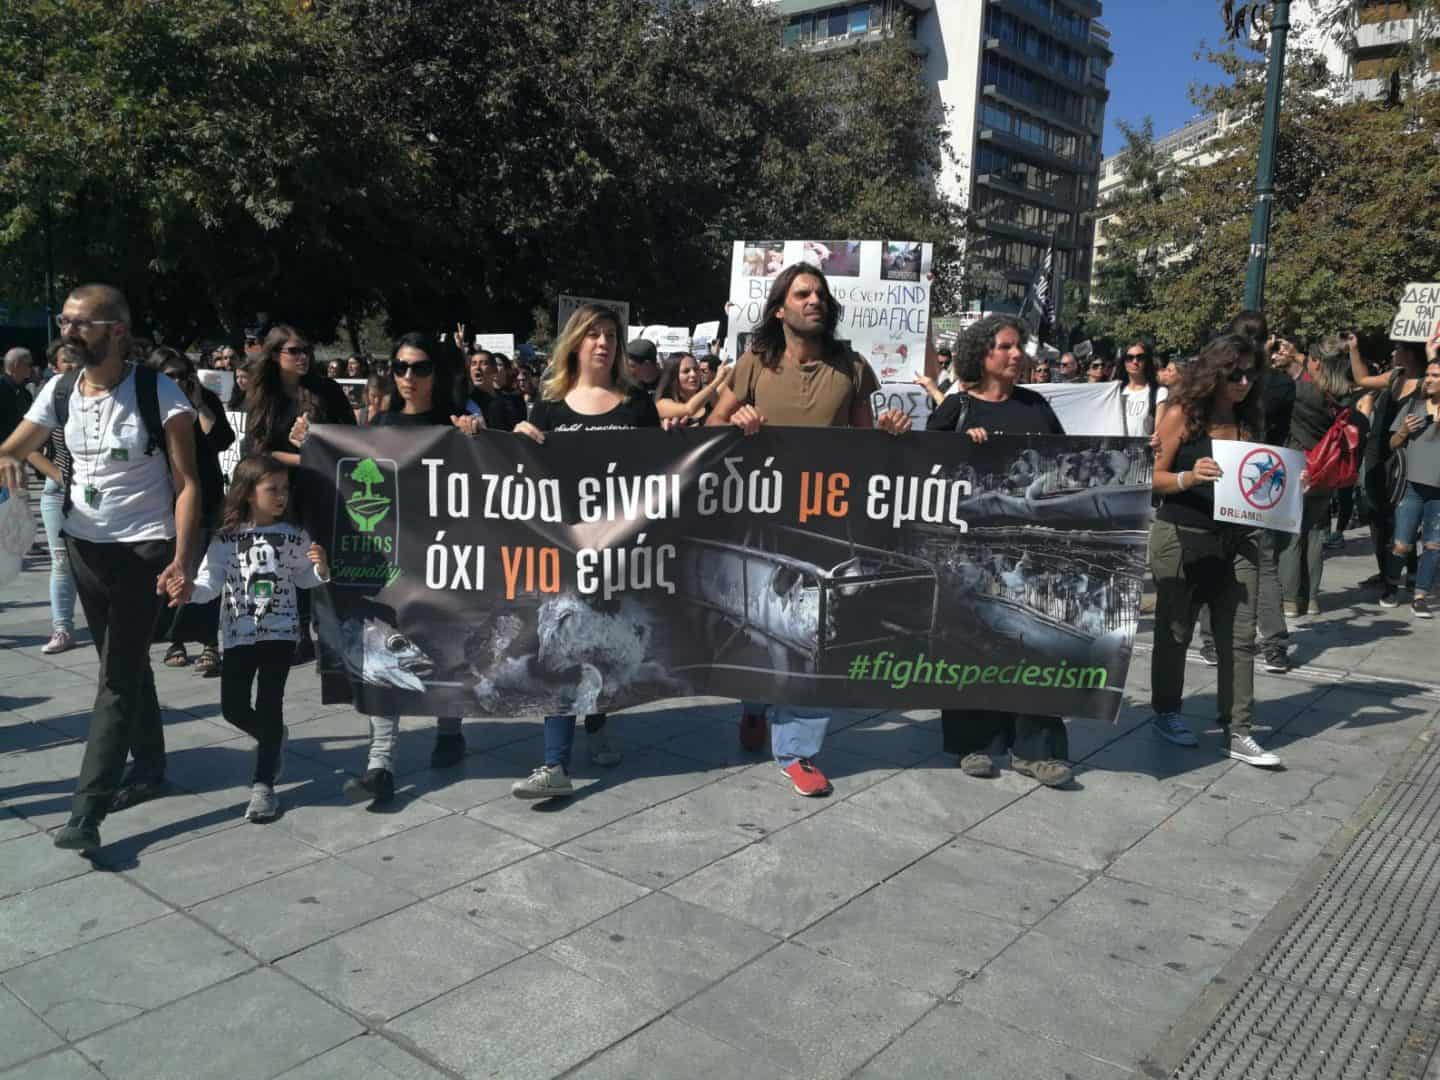 Μαζική, με δύναμη και πάθος η πορεία για τα δικαιώματα των ζώων / 1st official animal rights march in Greece: massive, powerful and with passion